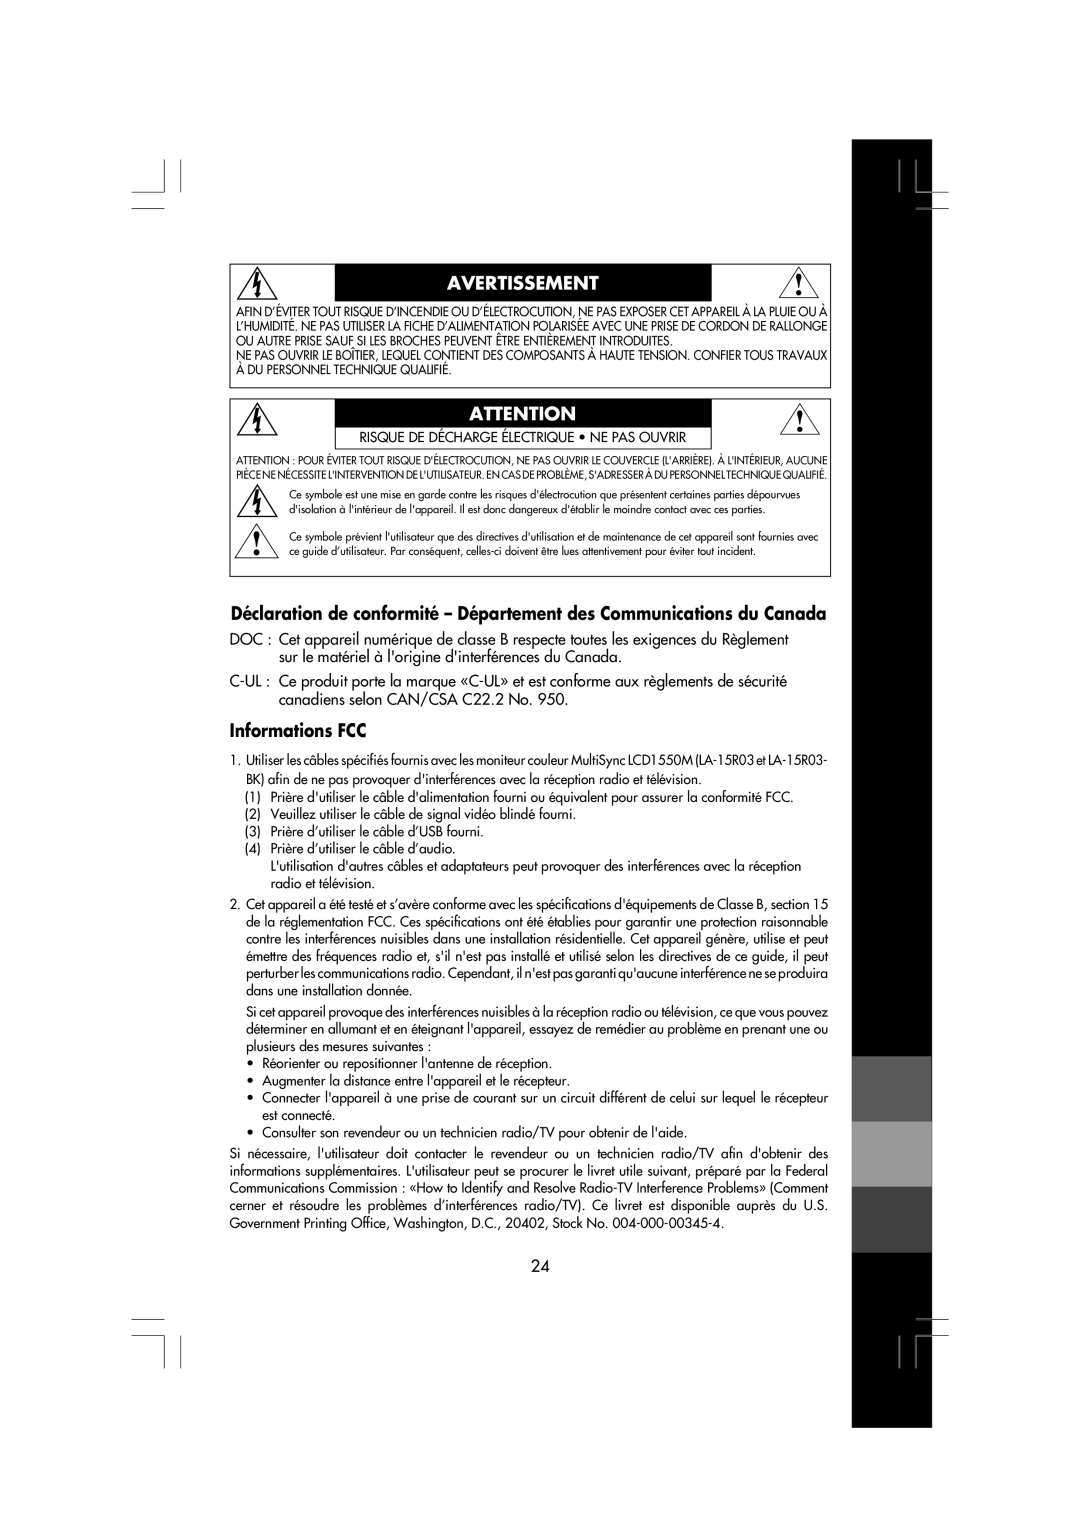 NEC LCD1550M manual Déclaration de conformité - Département des Communications du Canada, Informations FCC, Avertissement 